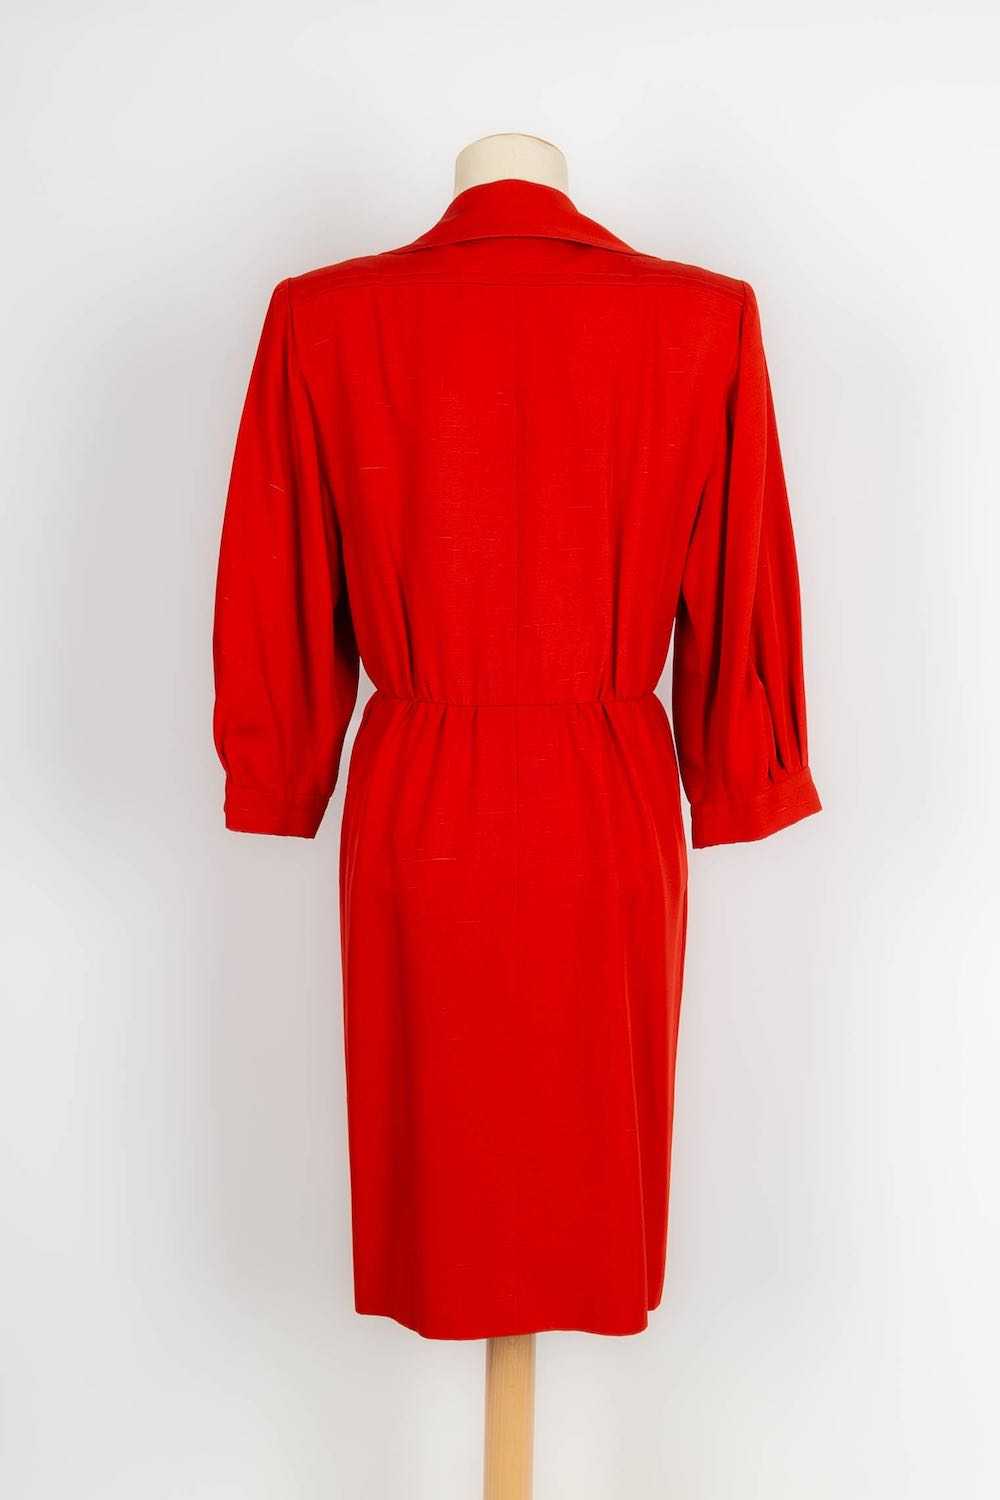 Yves Saint Laurent Haute Couture Dress - image 3